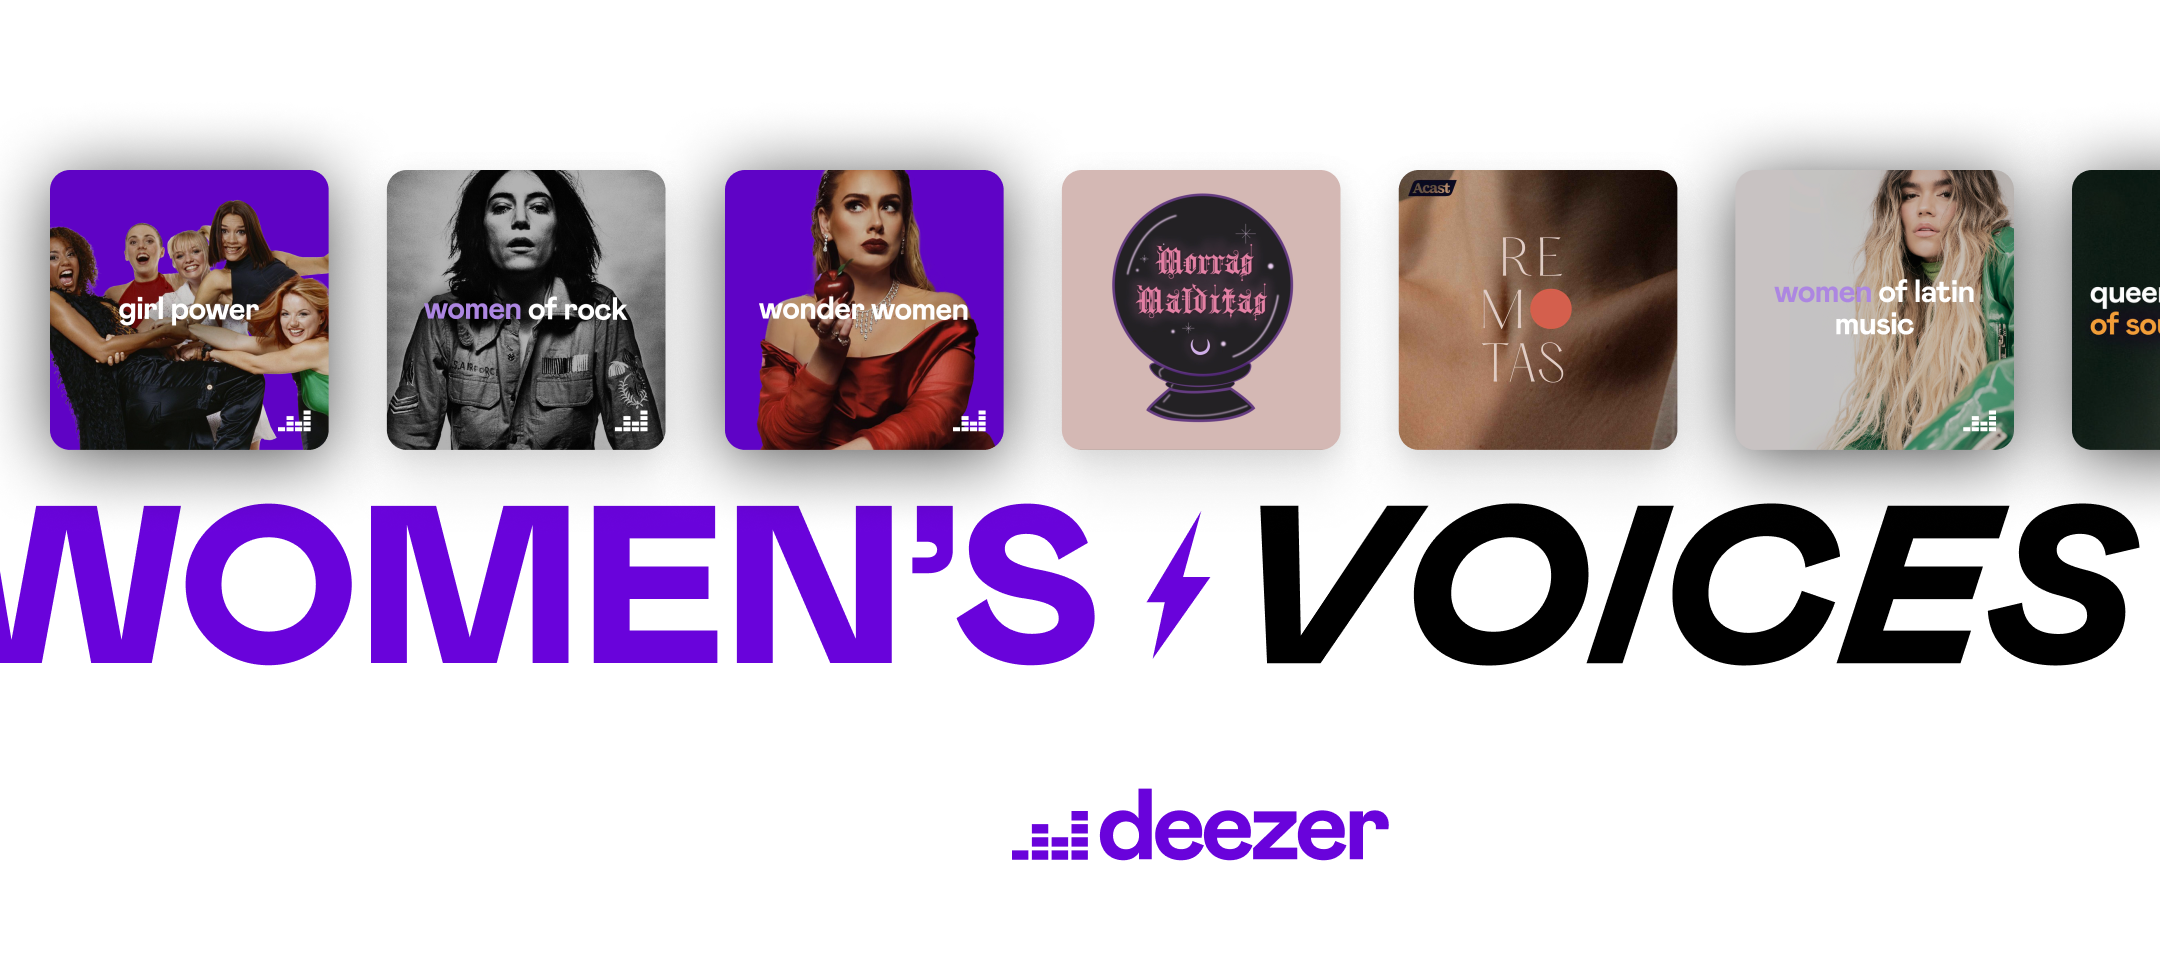 Voces de Mujeres - Women's Voices en Deezer